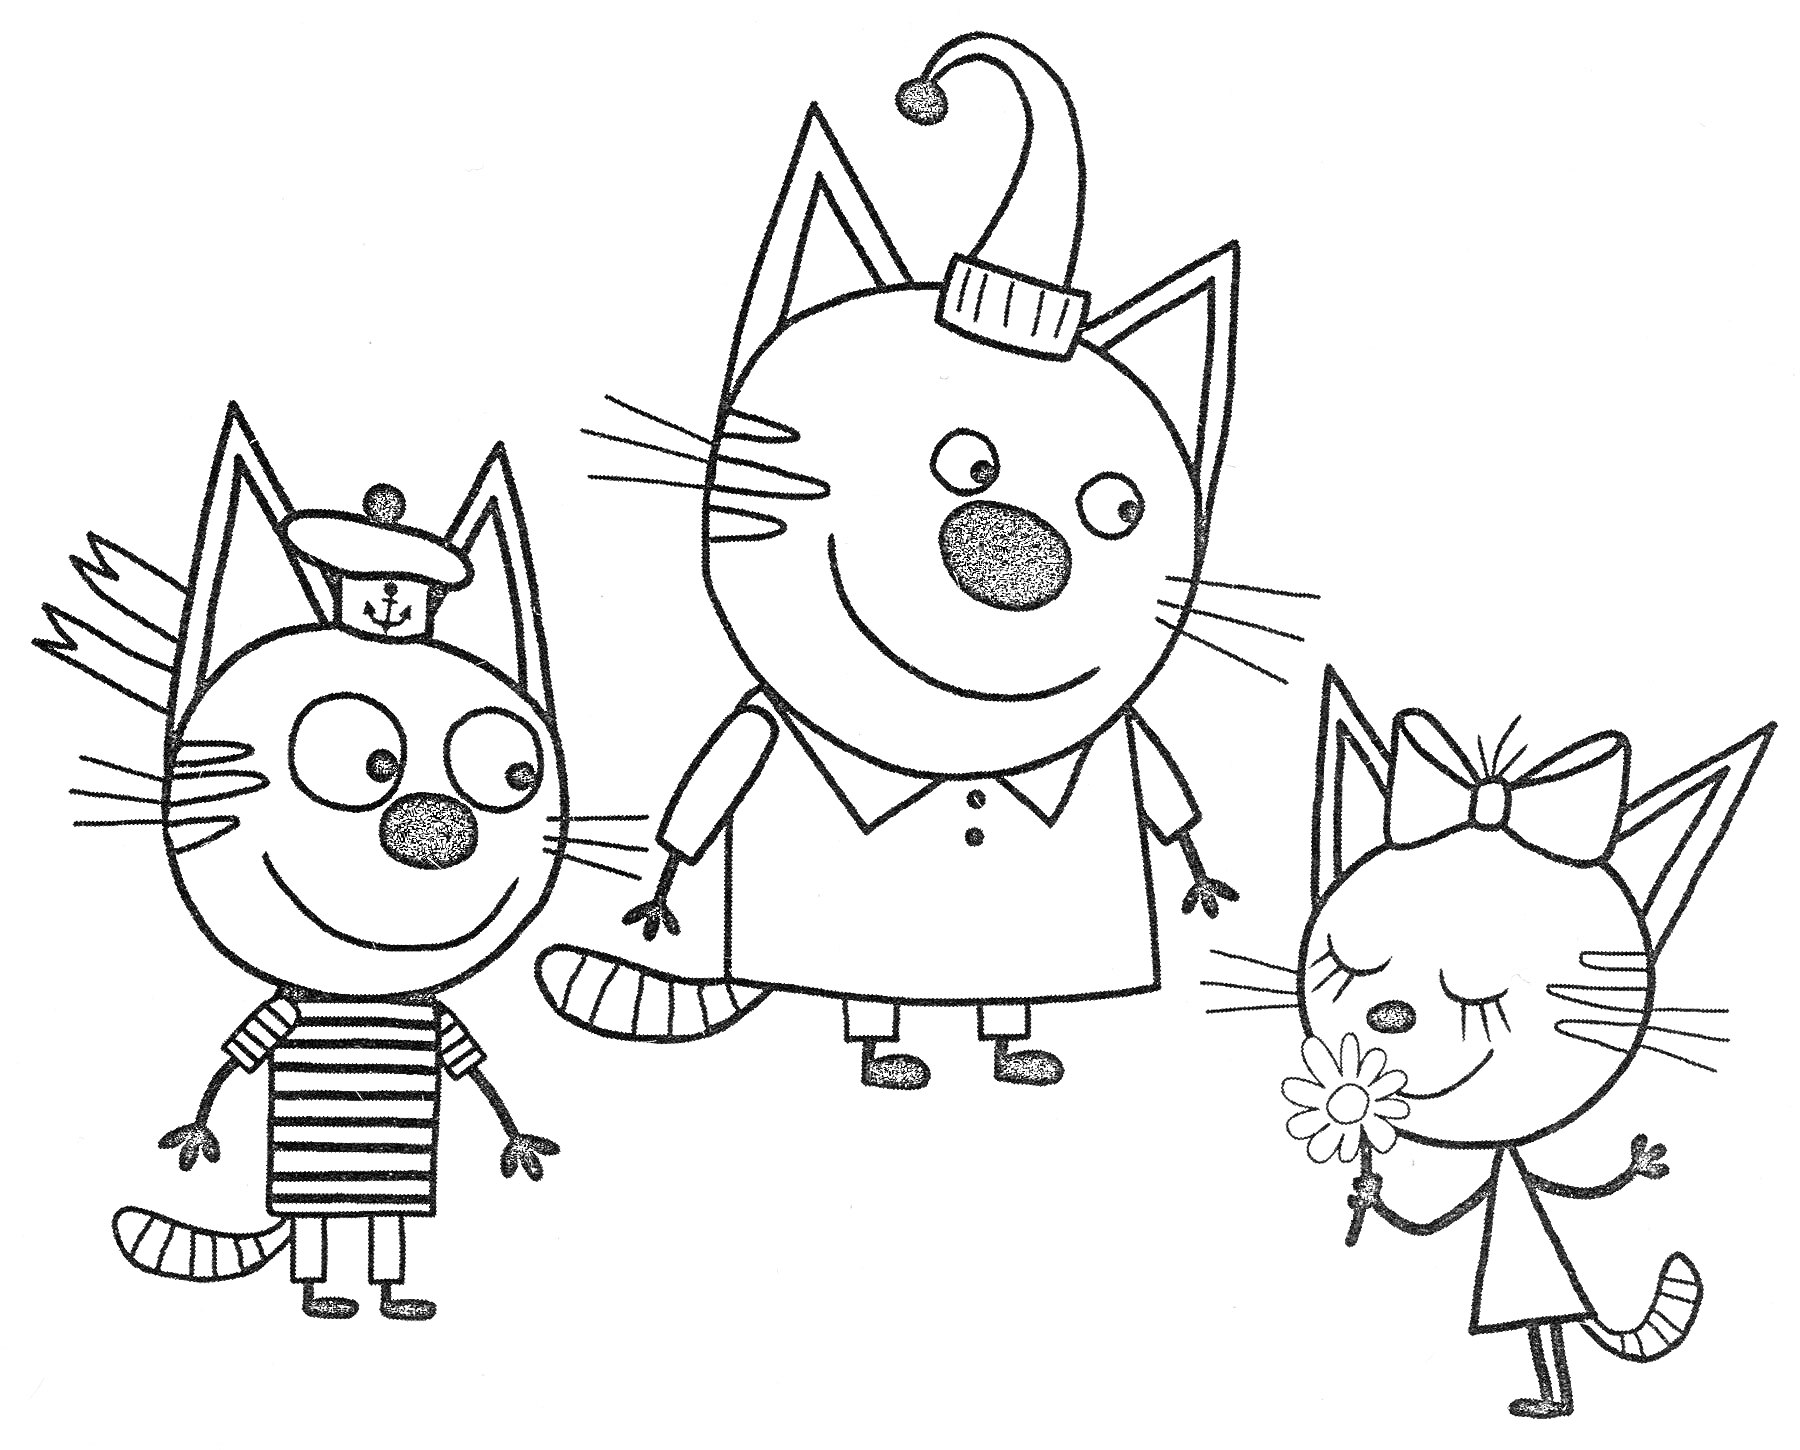 Раскраска Три кота, один в шляпе, другой в полосатой футболке, третий с бантиком и цветком